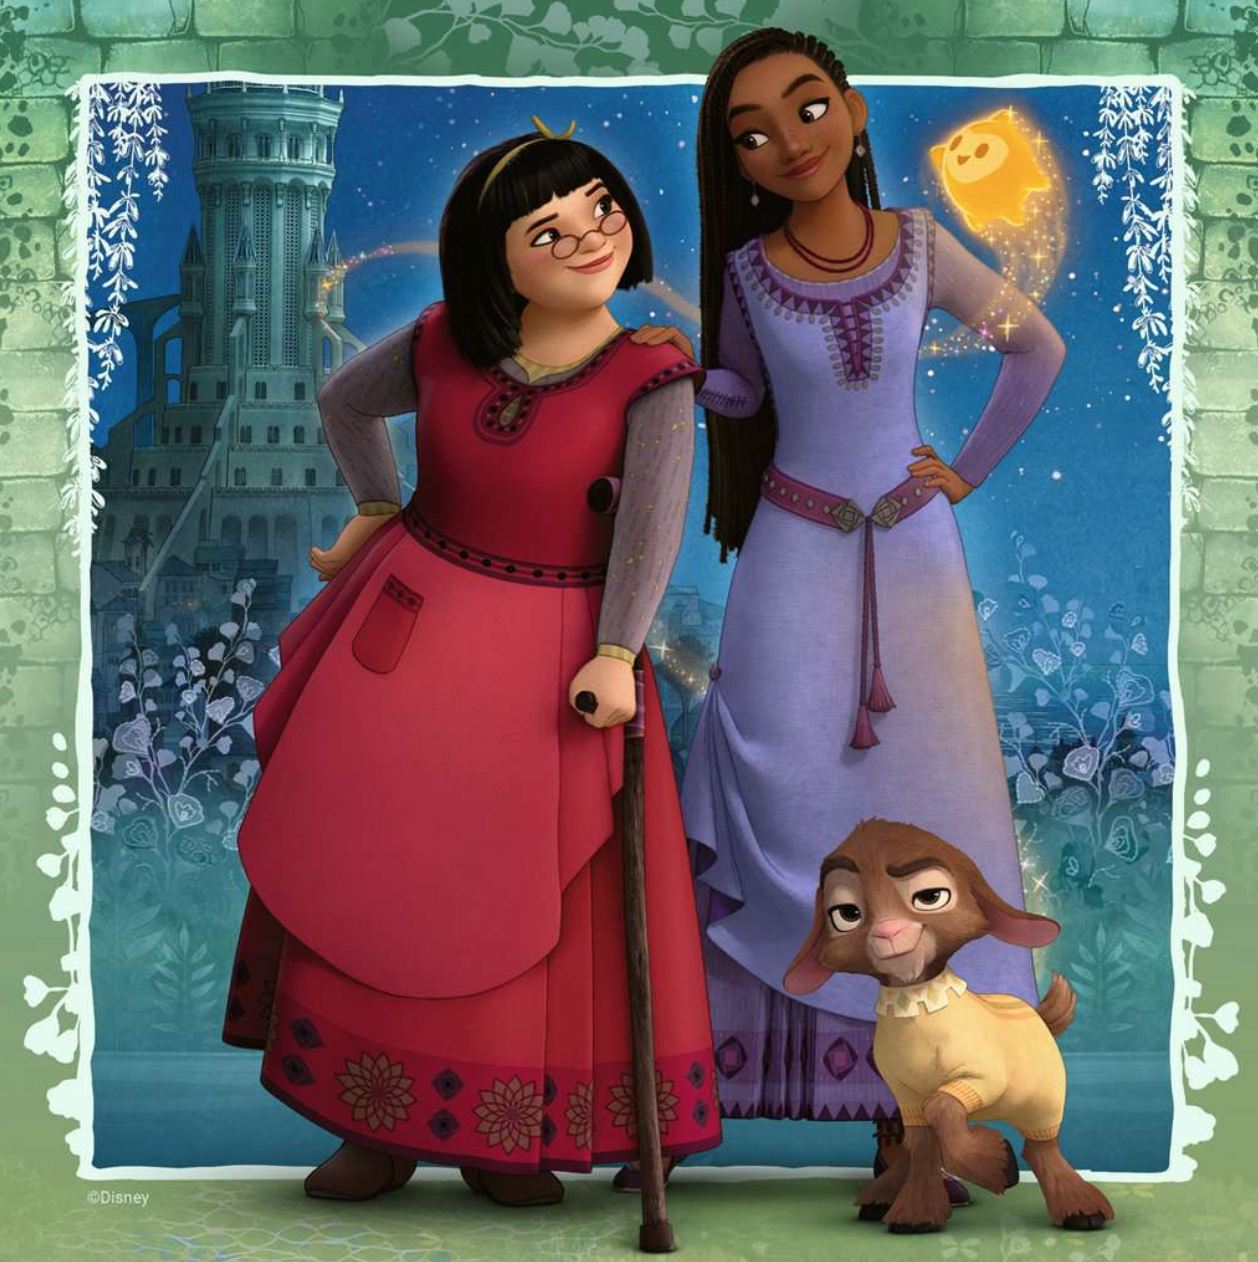 Disney wish : Collectif - 2764367120 - Livres pour enfants dès 3